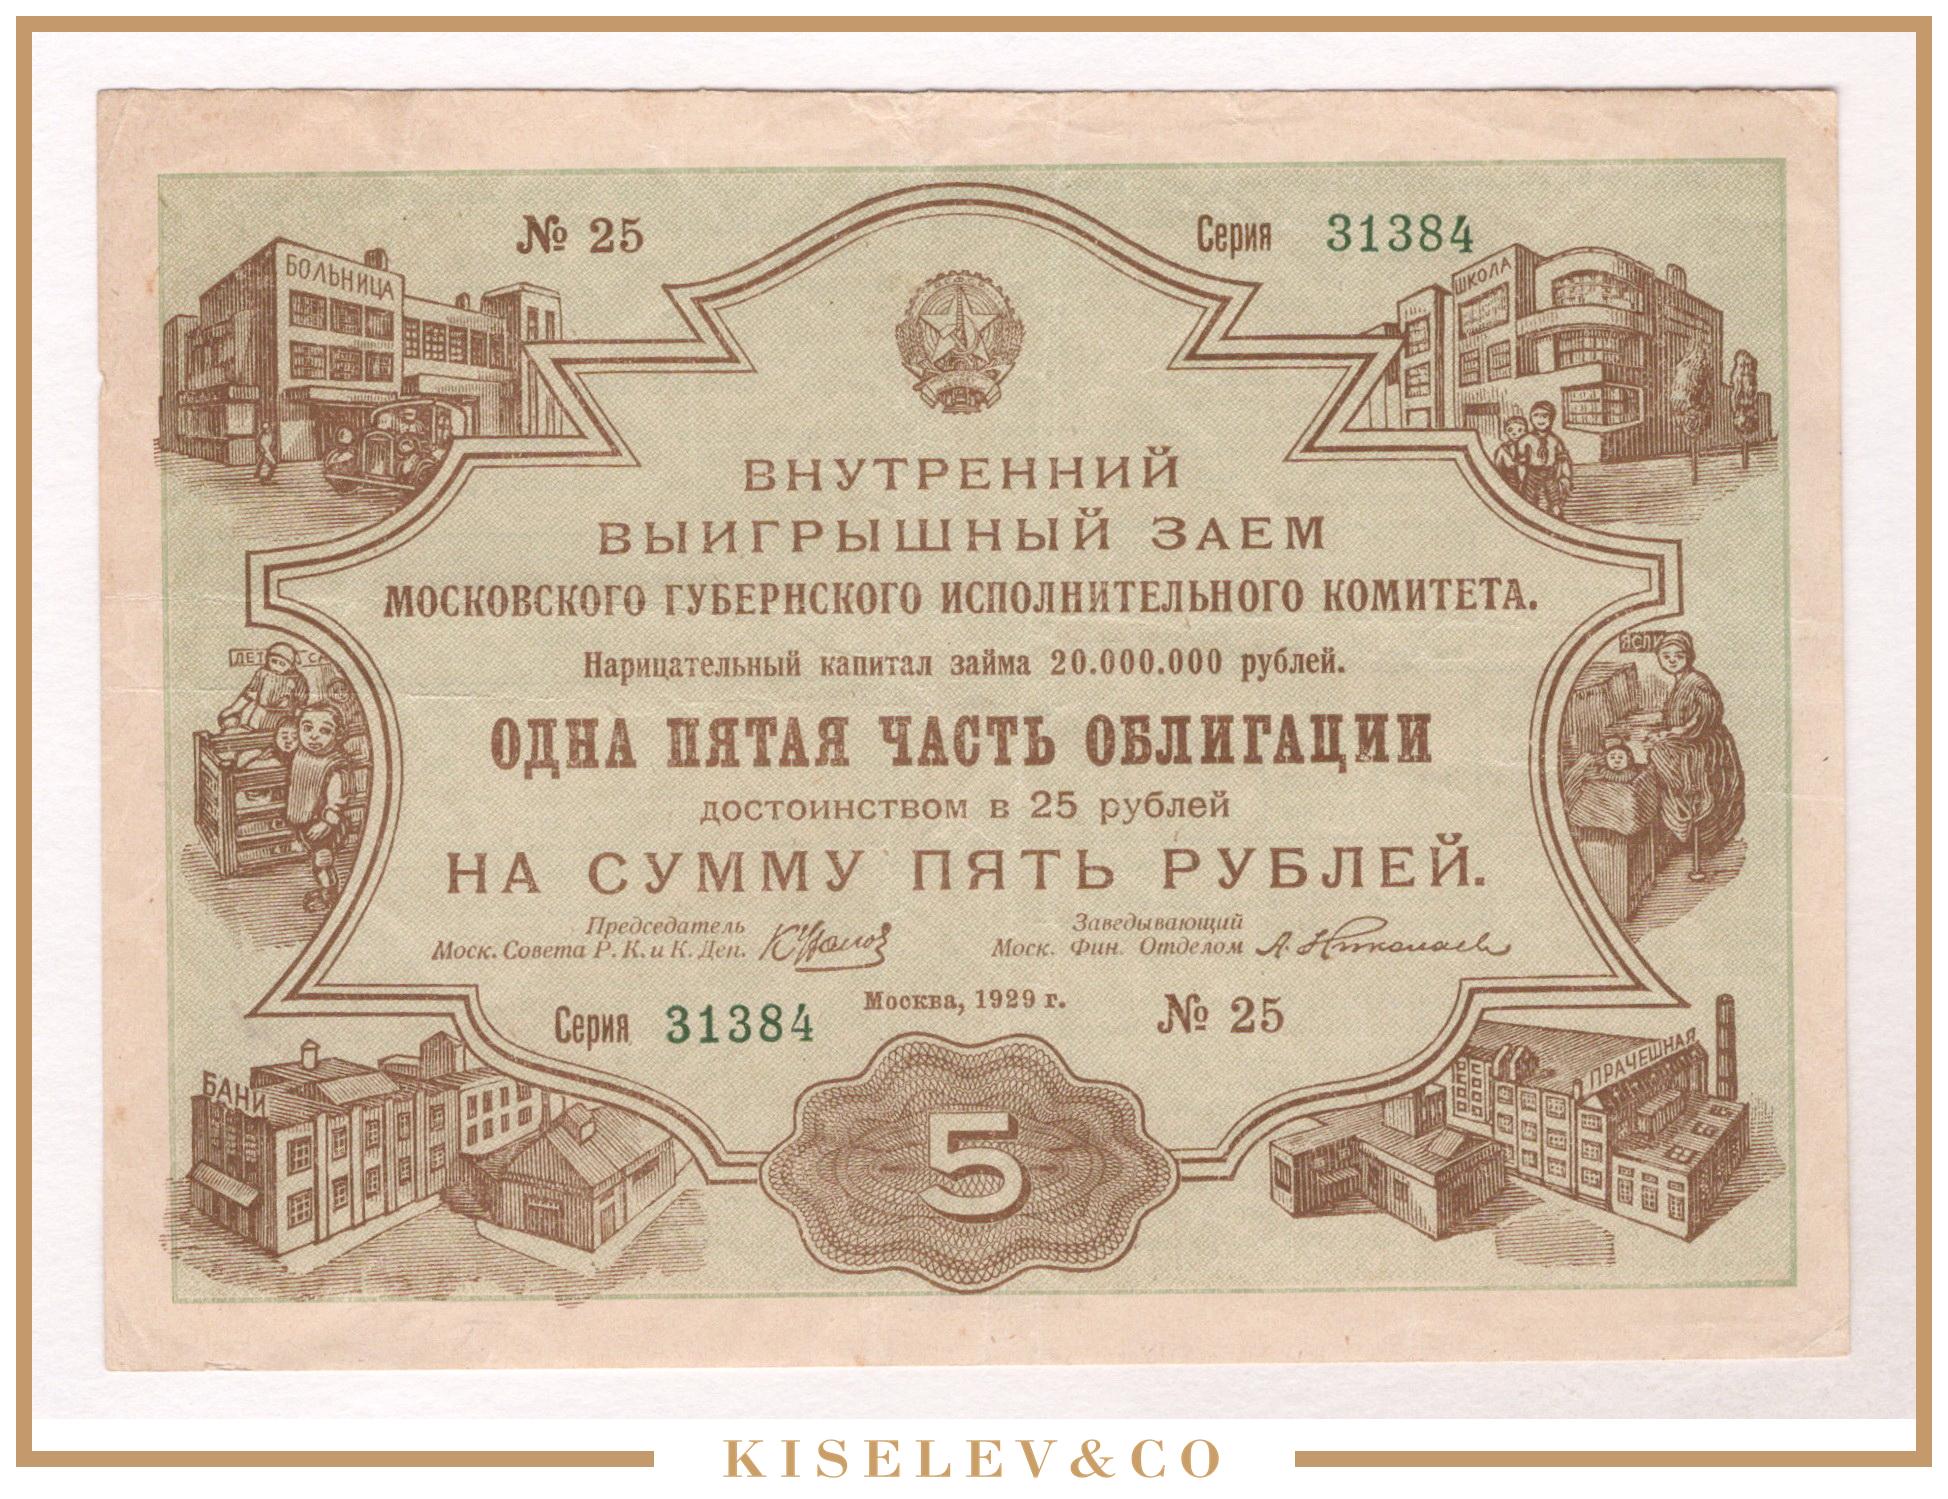 5 рублей облигация